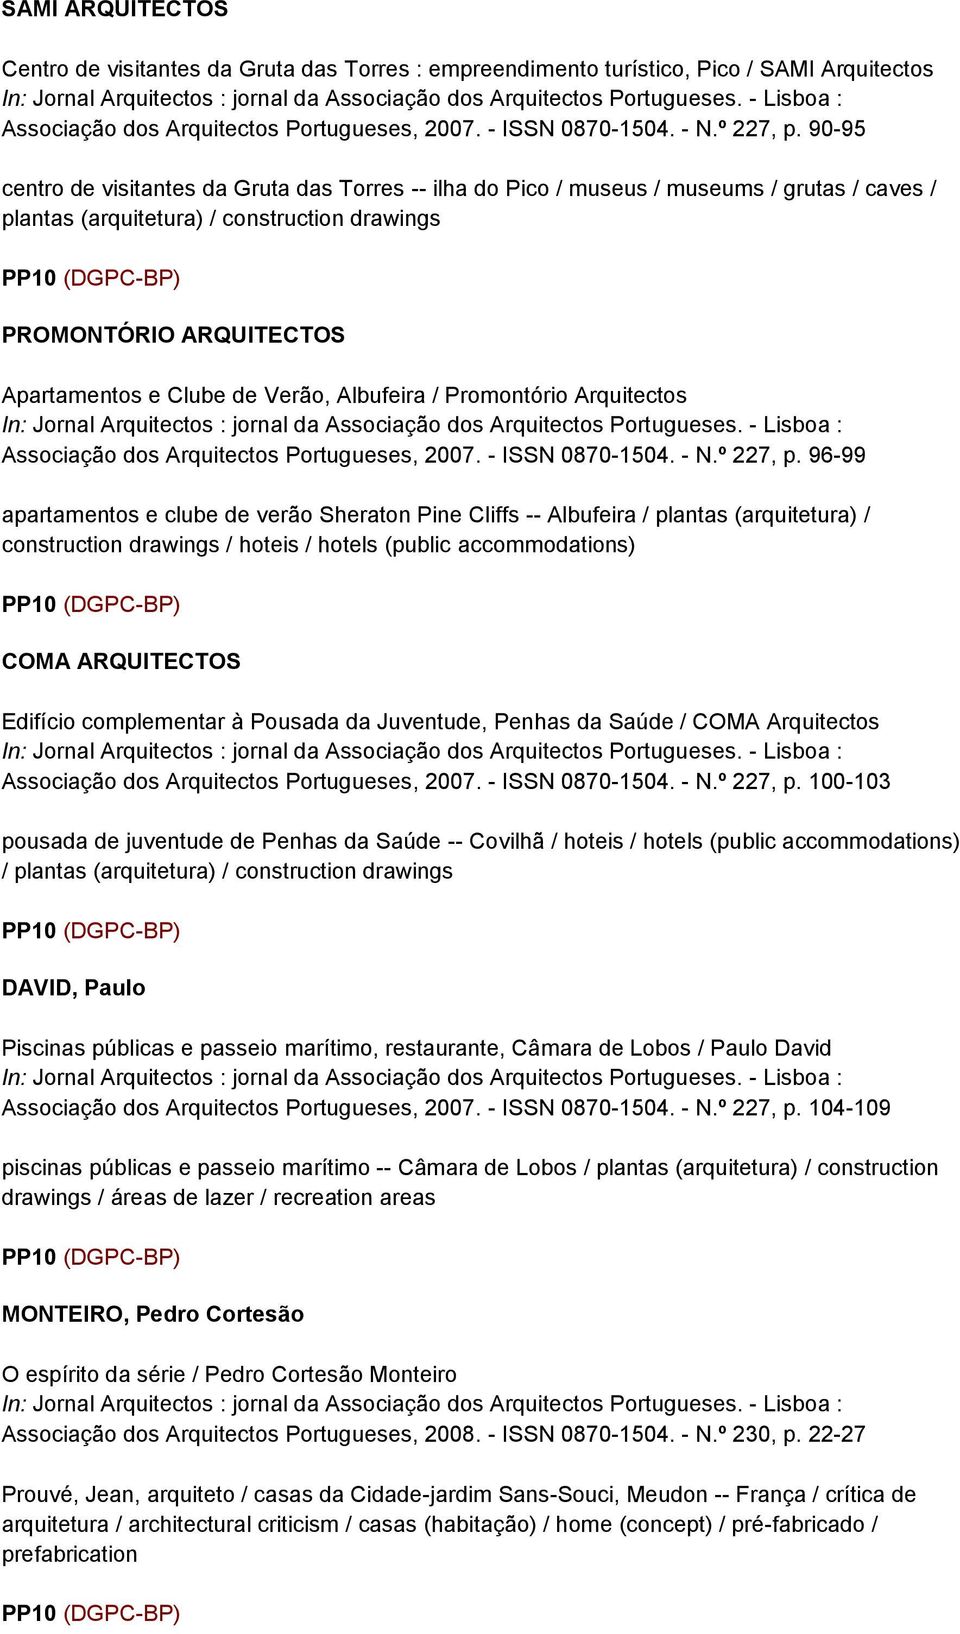 Verão, Albufeira / Promontório Arquitectos Associação dos Arquitectos Portugueses, 2007. - ISSN 0870-1504. - N.º 227, p.